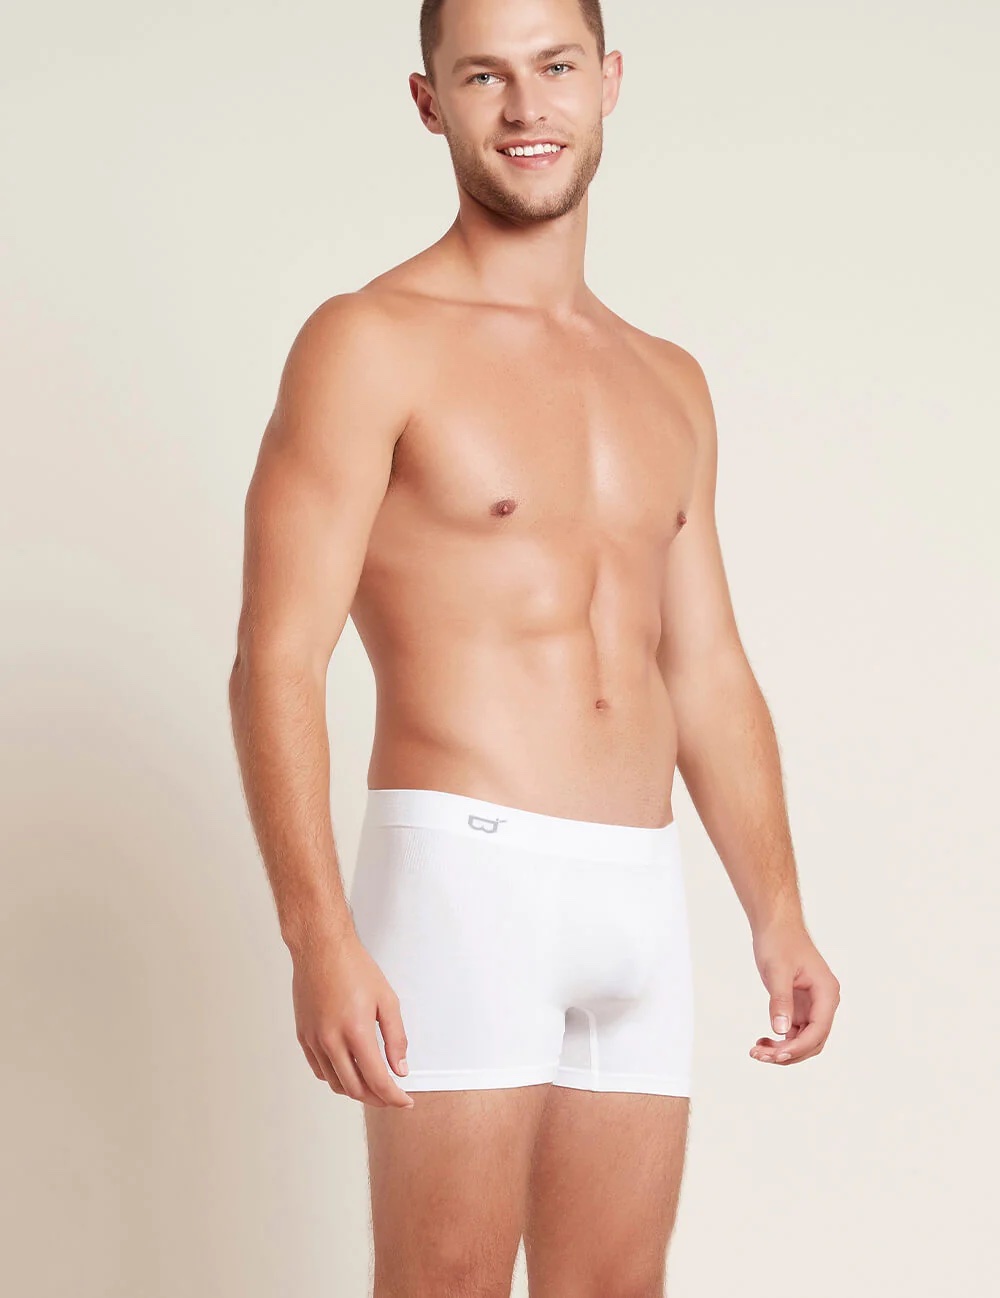 A model in white boxer briefs.